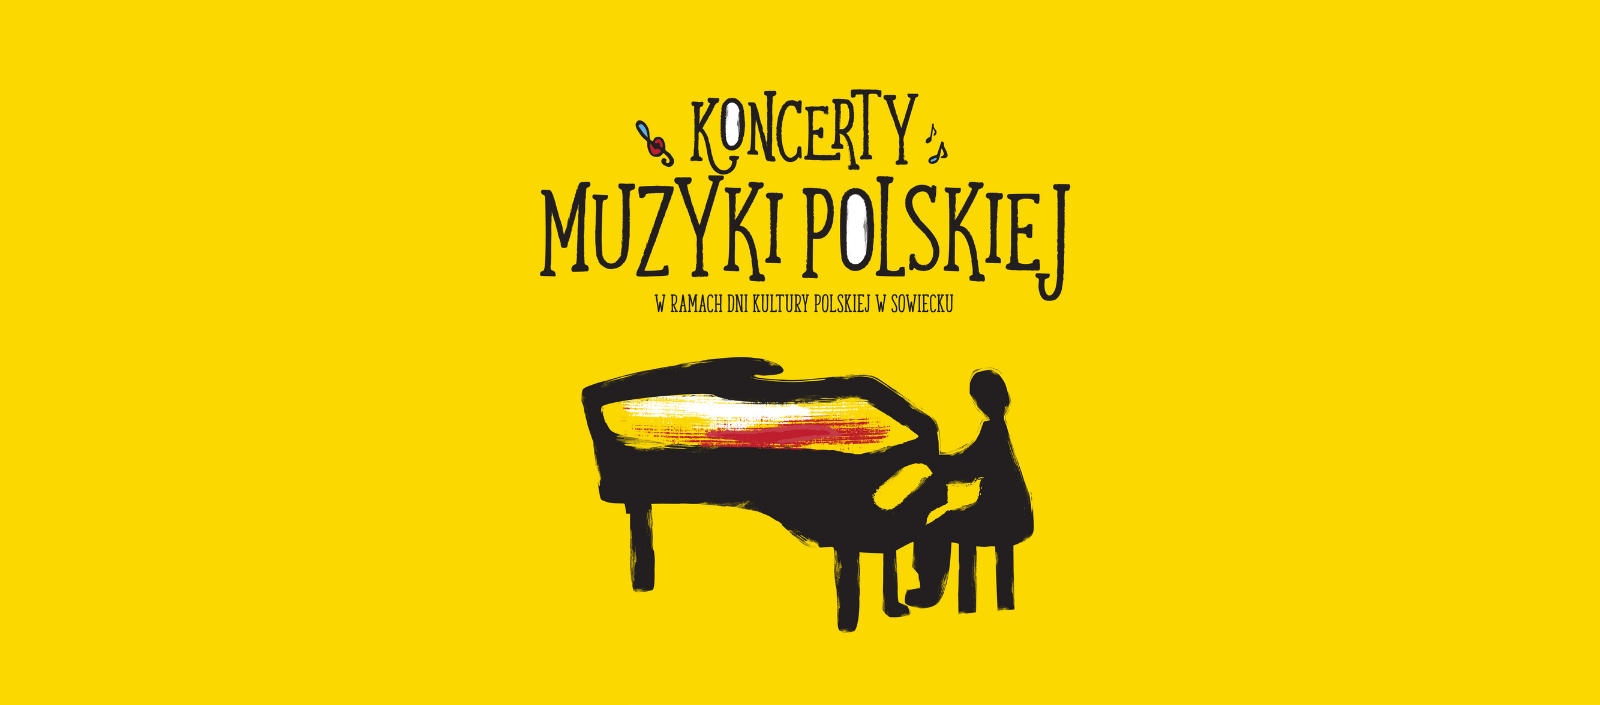 Koncerty muzyki polskiej „Od słowa do słowa”